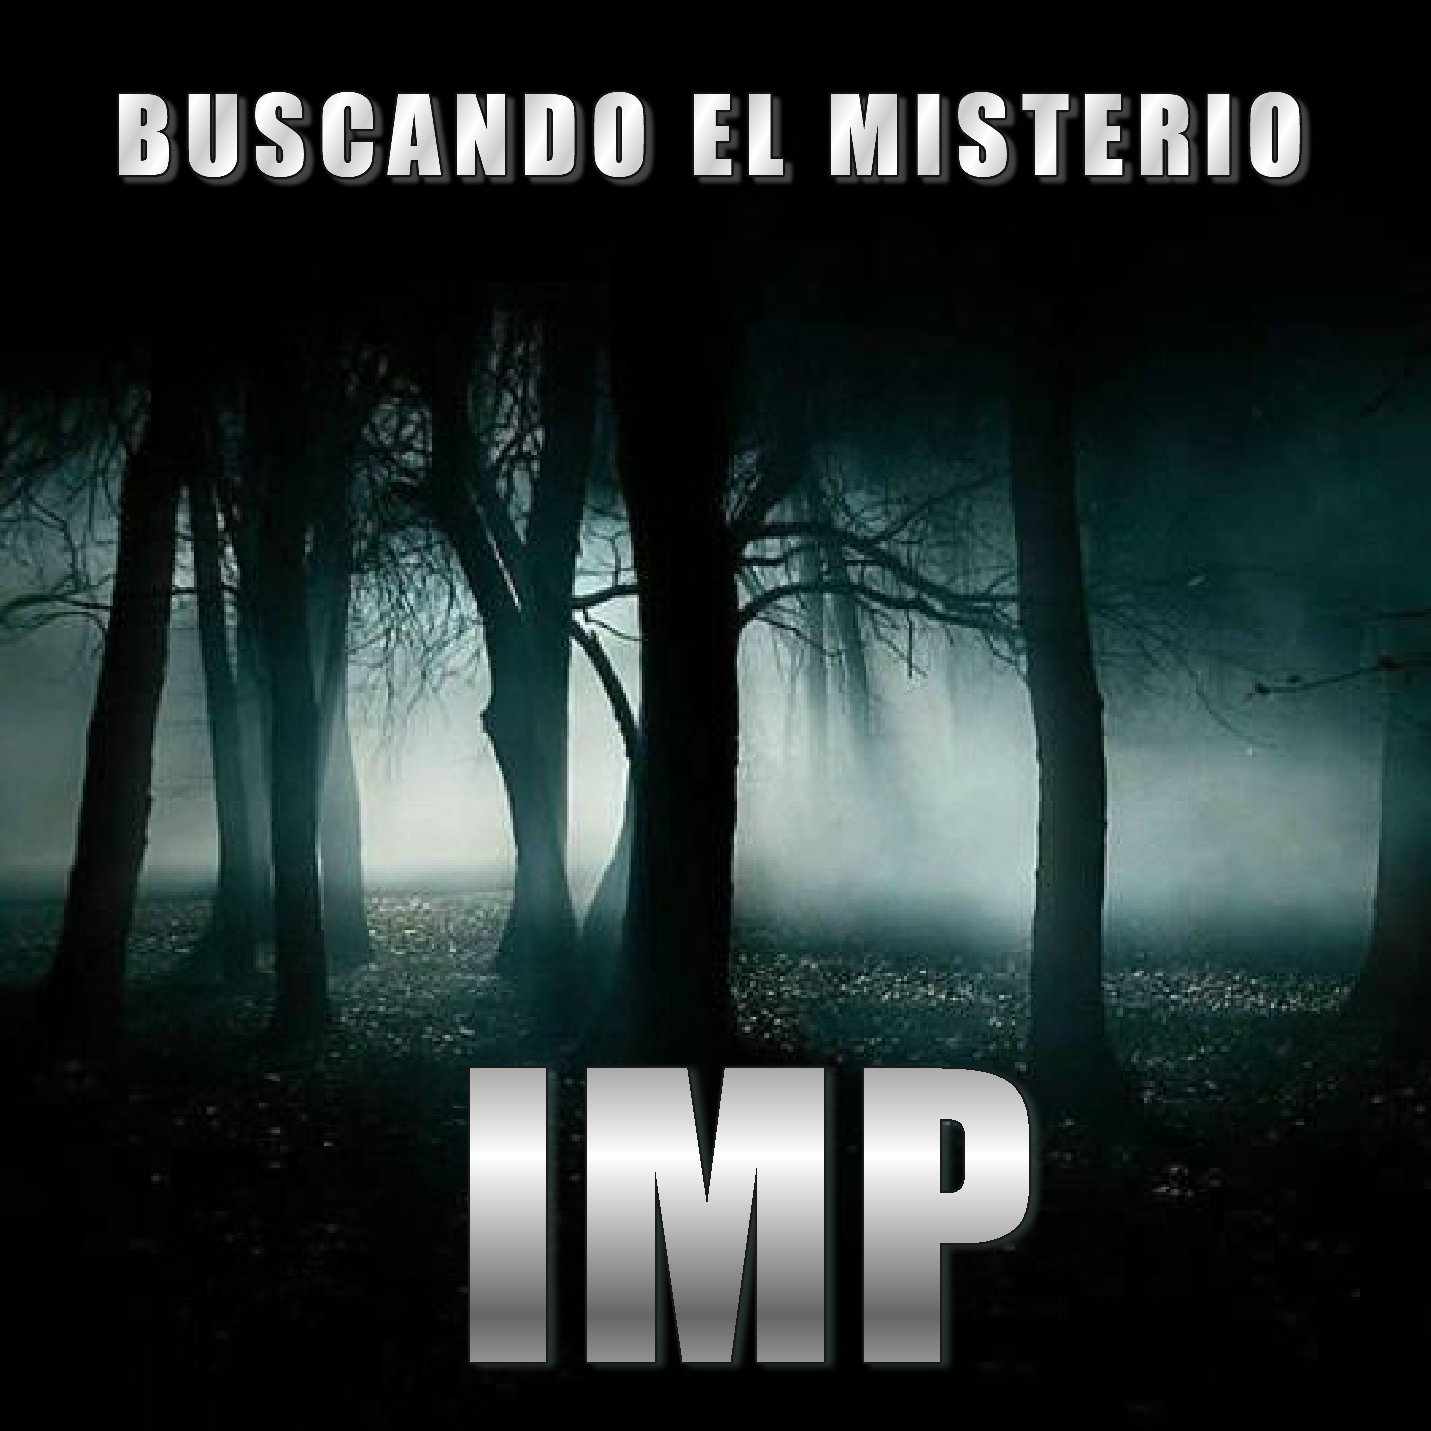 Cuenta Oficial de Twitter del Grupo de Investigación del Mundo Paranormal y del Canal de Youtube ( Buscando el misterio IMP )